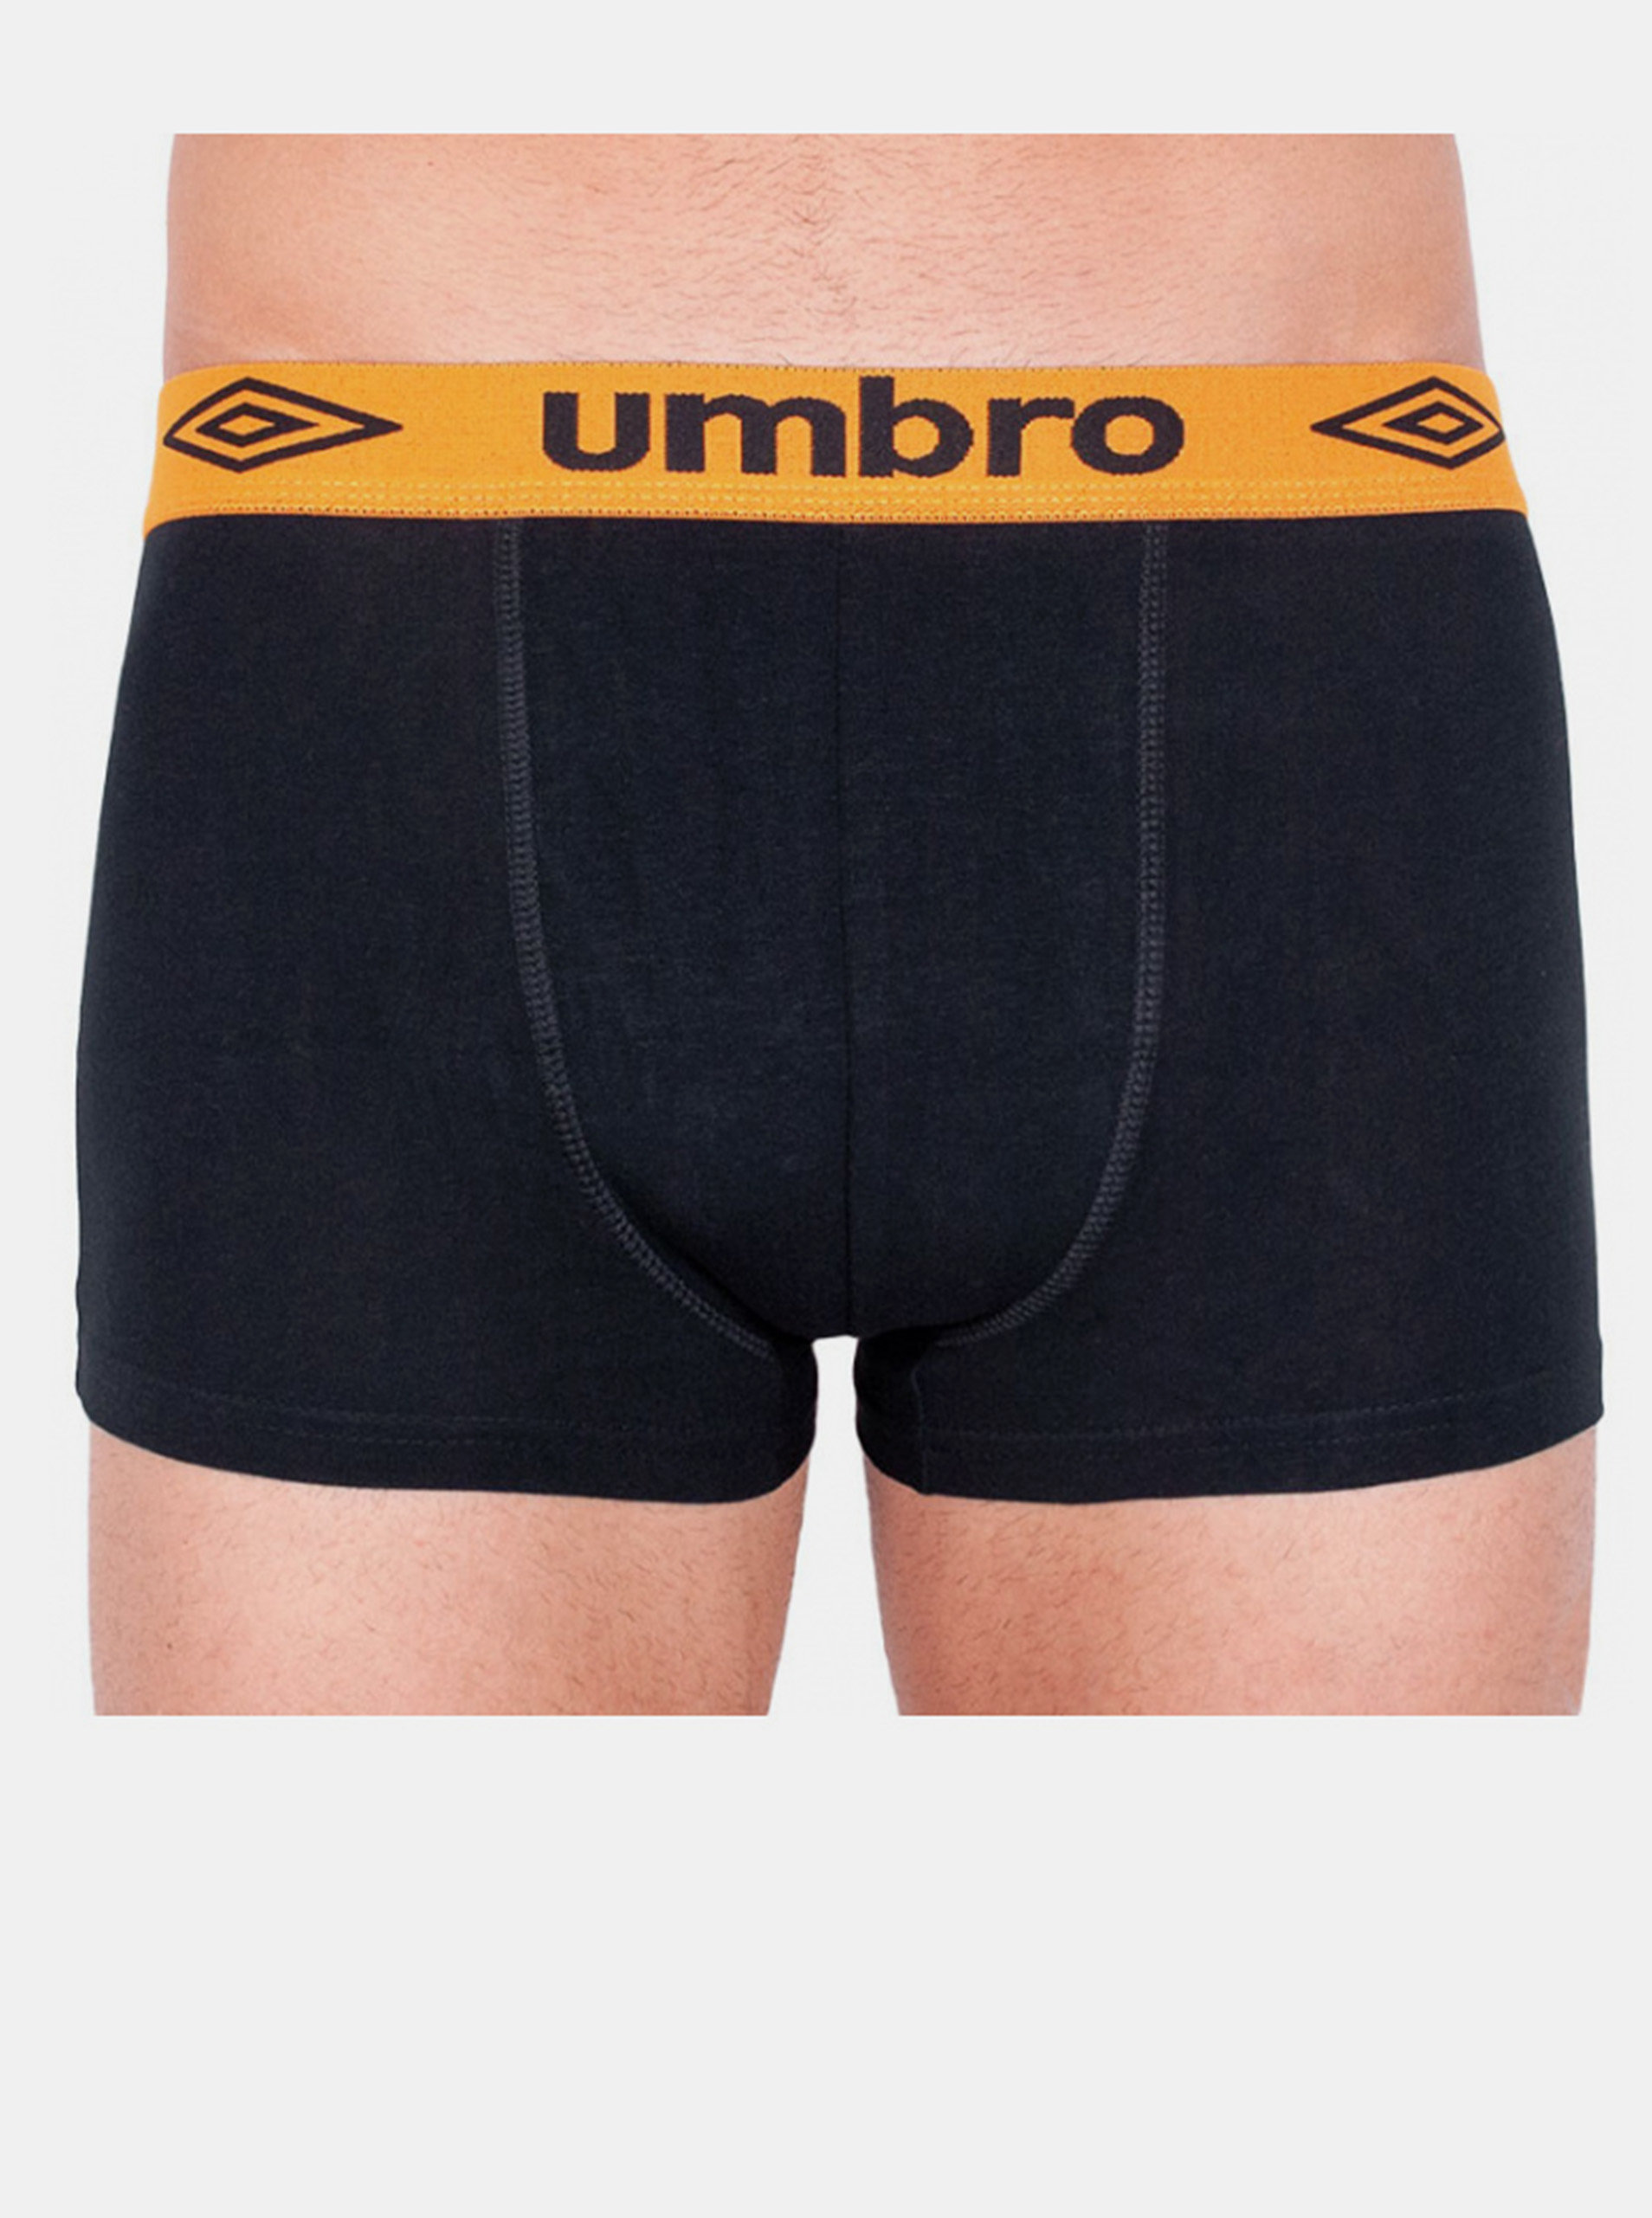 Fotografie Pánské boxerky Umbro short černé s oranžovou gumou